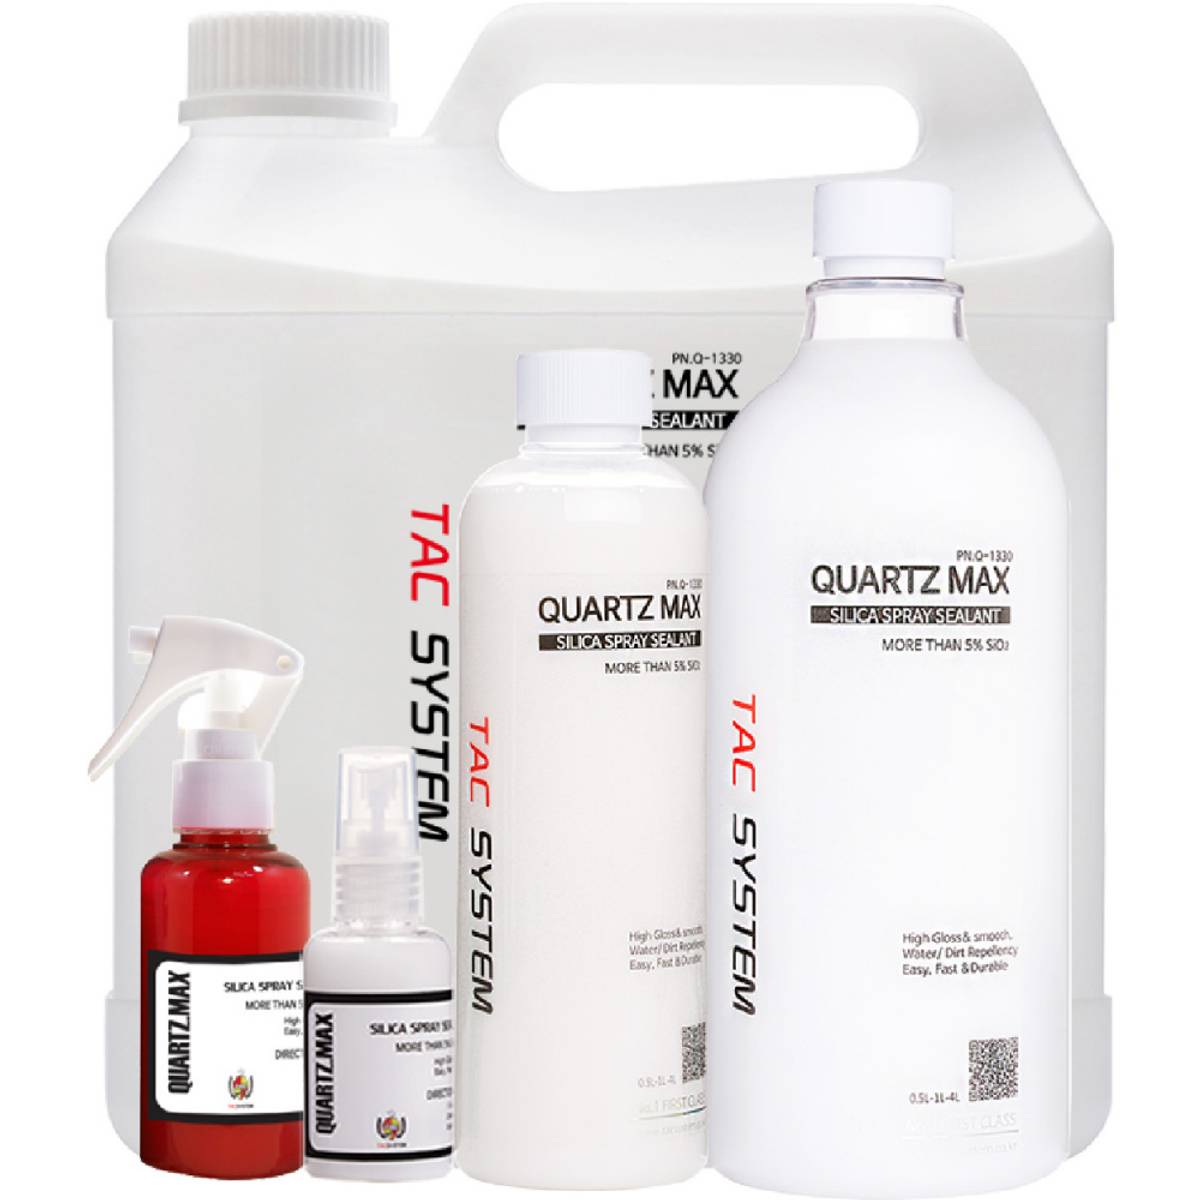 Tacsystem Quartz Max 1000ml spray coating - Garasjekos.no